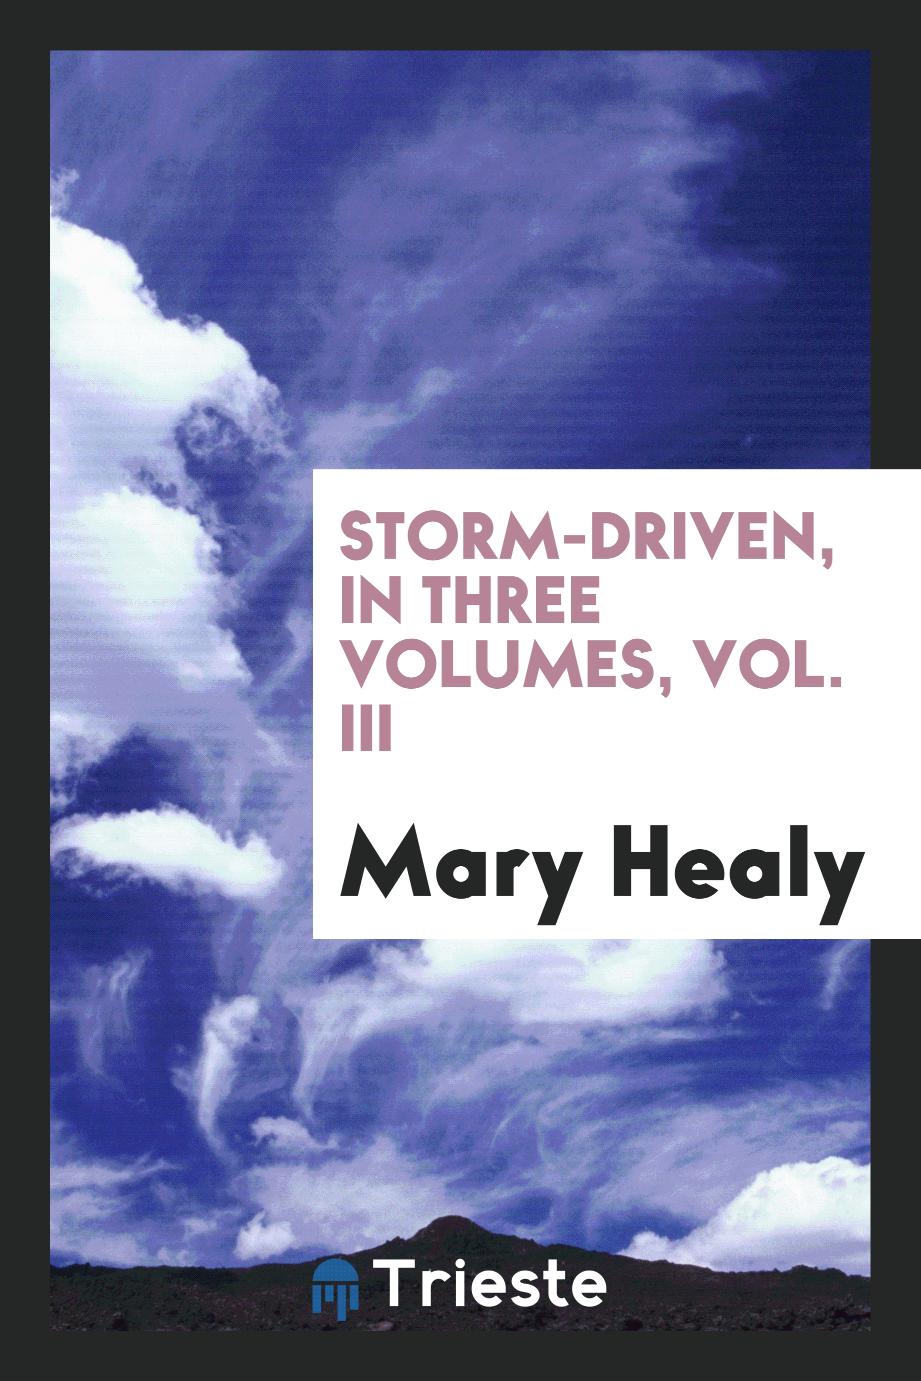 Storm-driven, in three volumes, Vol. III